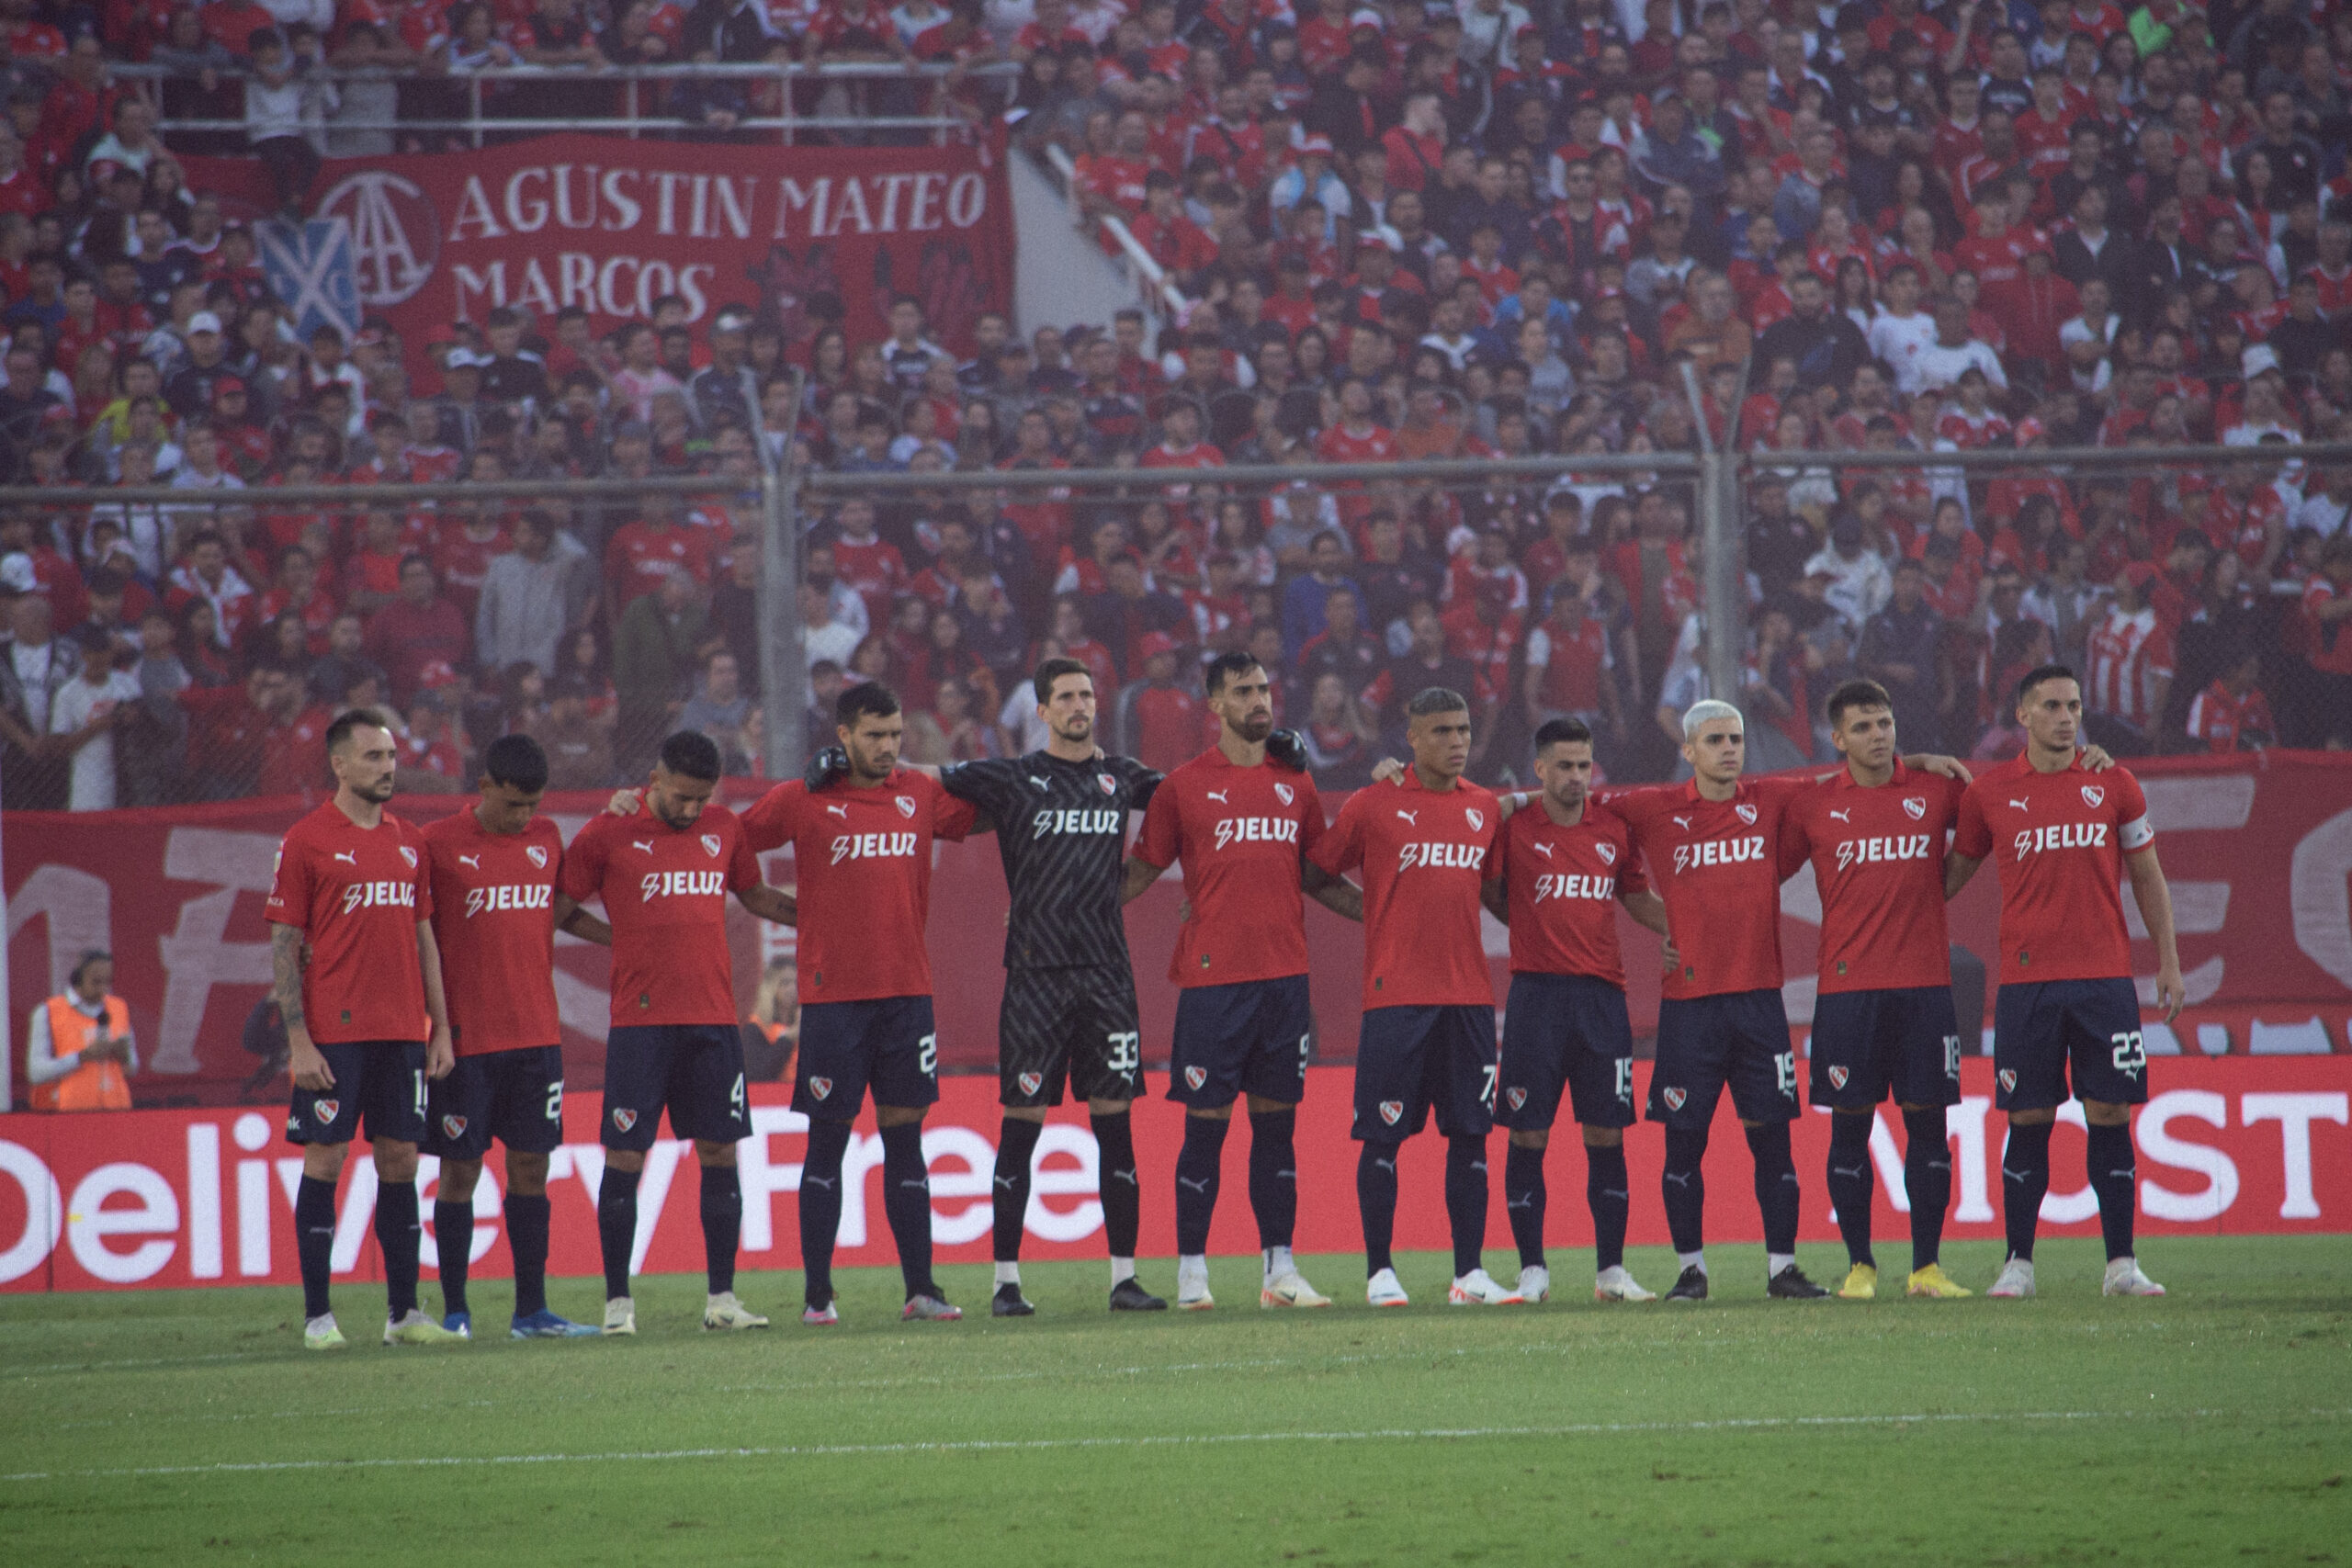 Independiente vs Atlético Tucumán